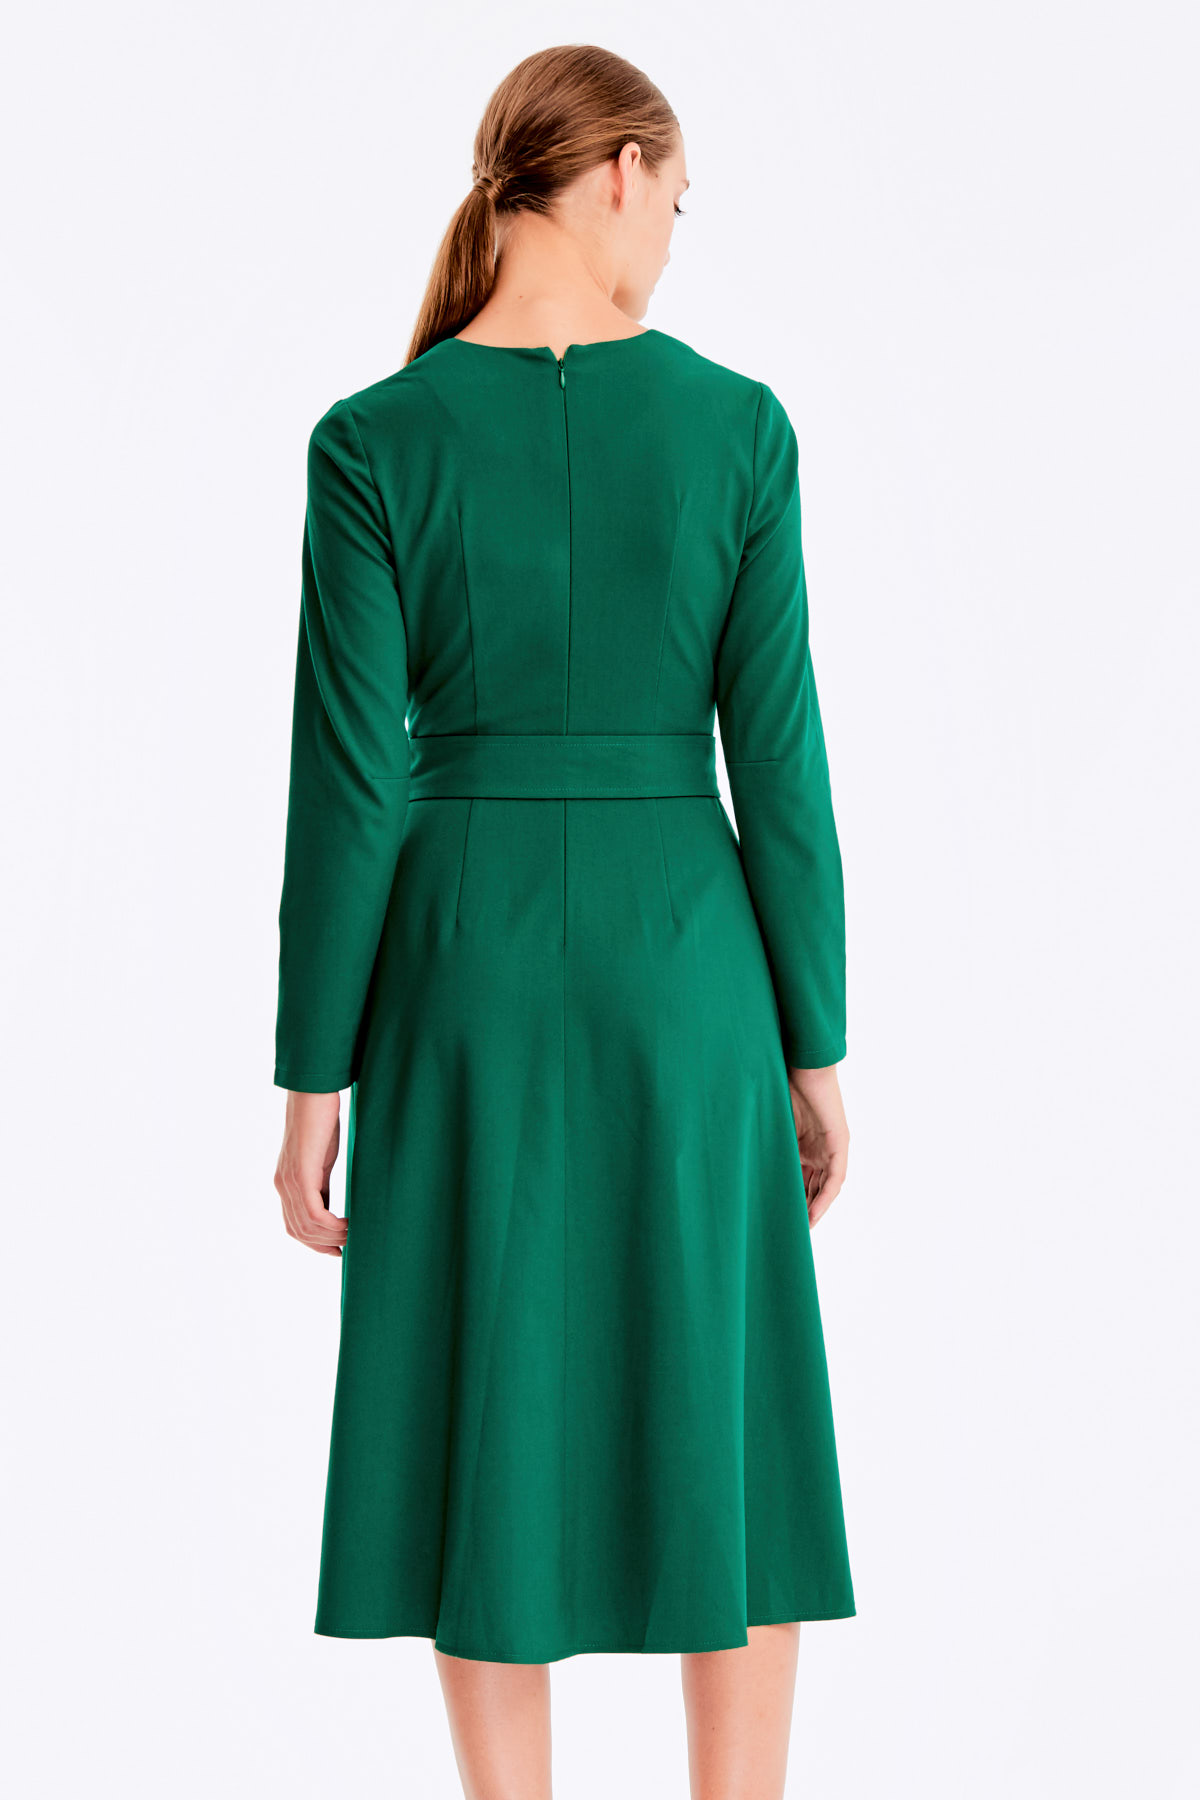 Midi V-neck green dress, photo 6